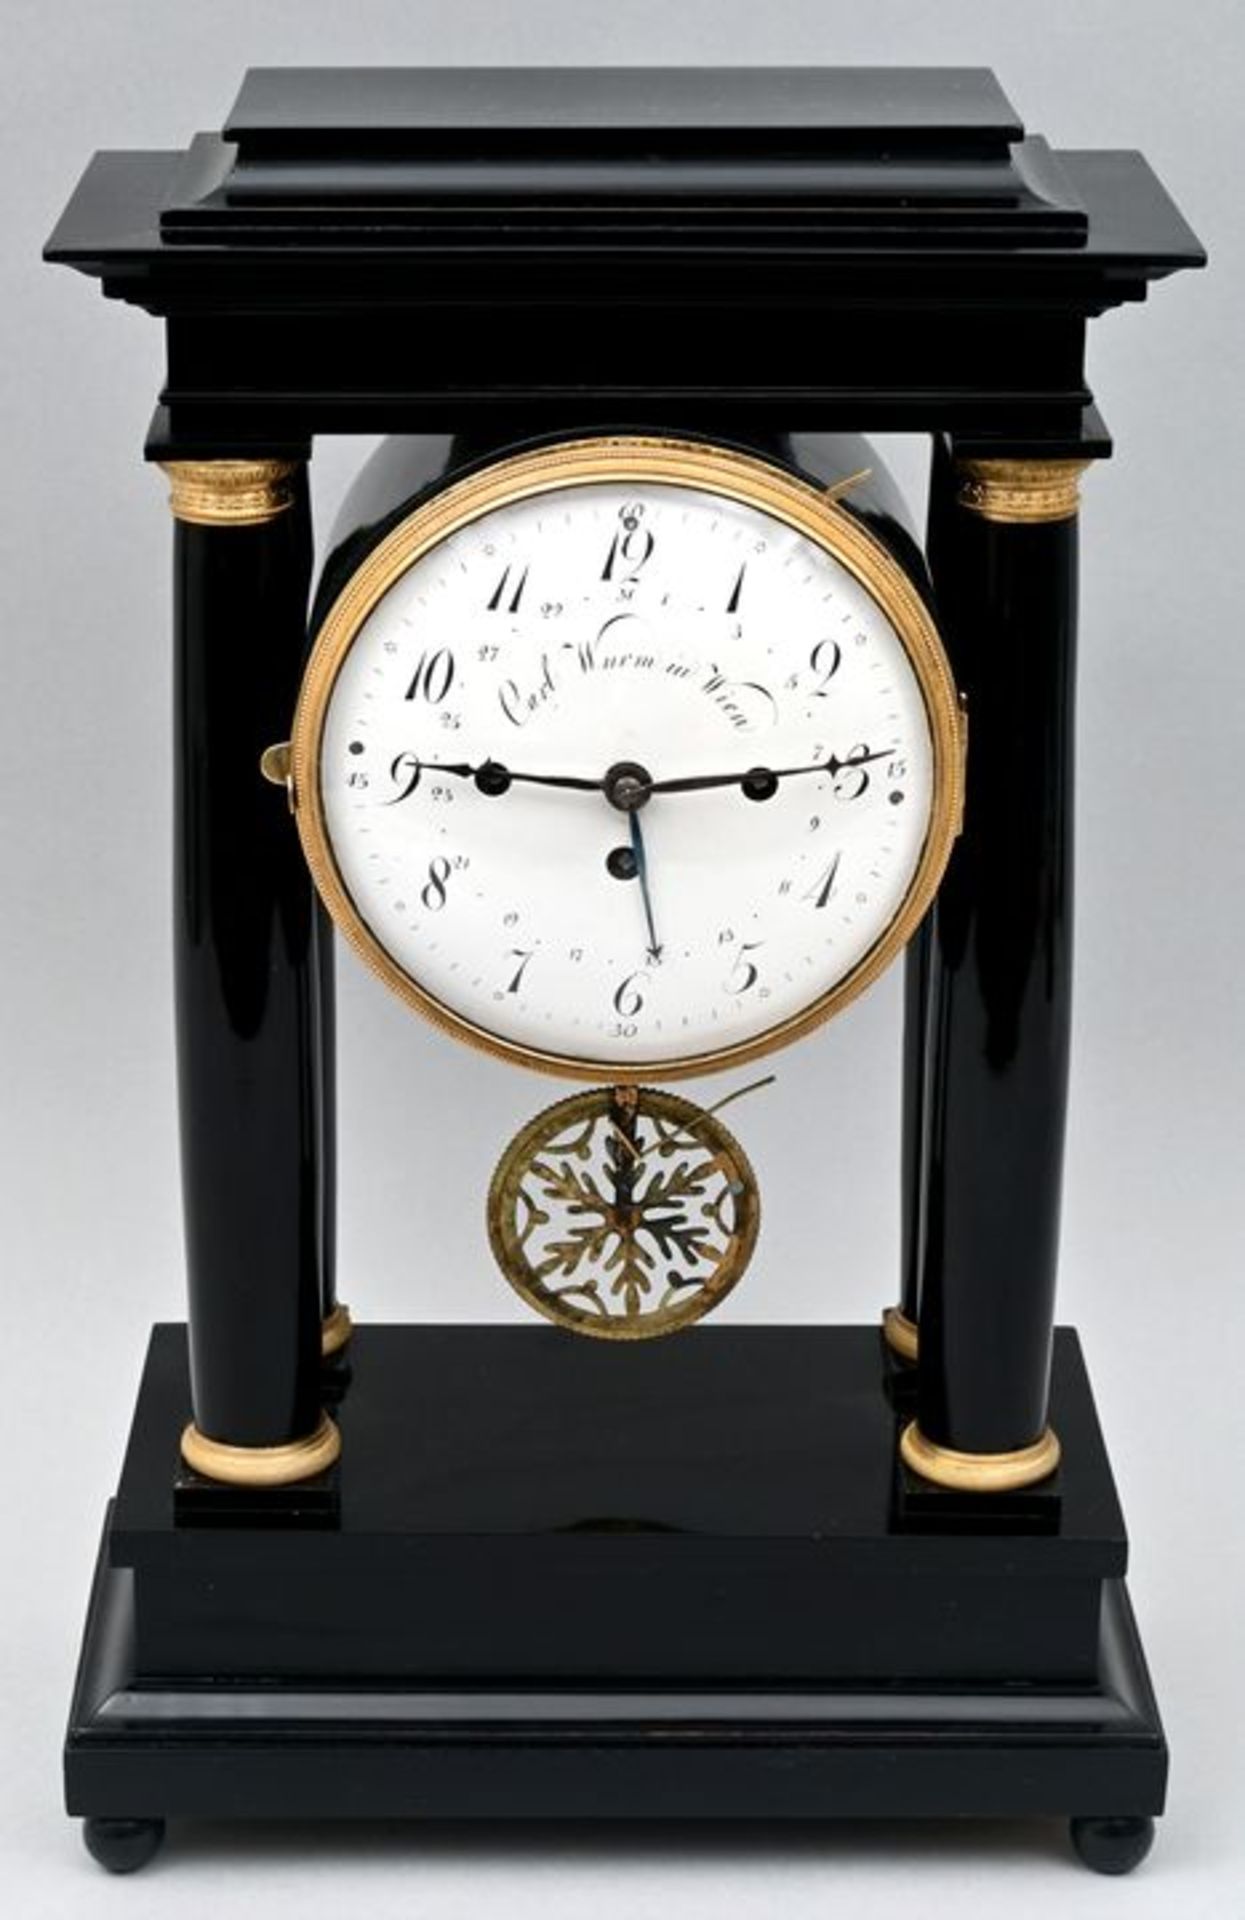 Stutzuhr, C. Wurm, Wien / bracket clock - Image 5 of 7